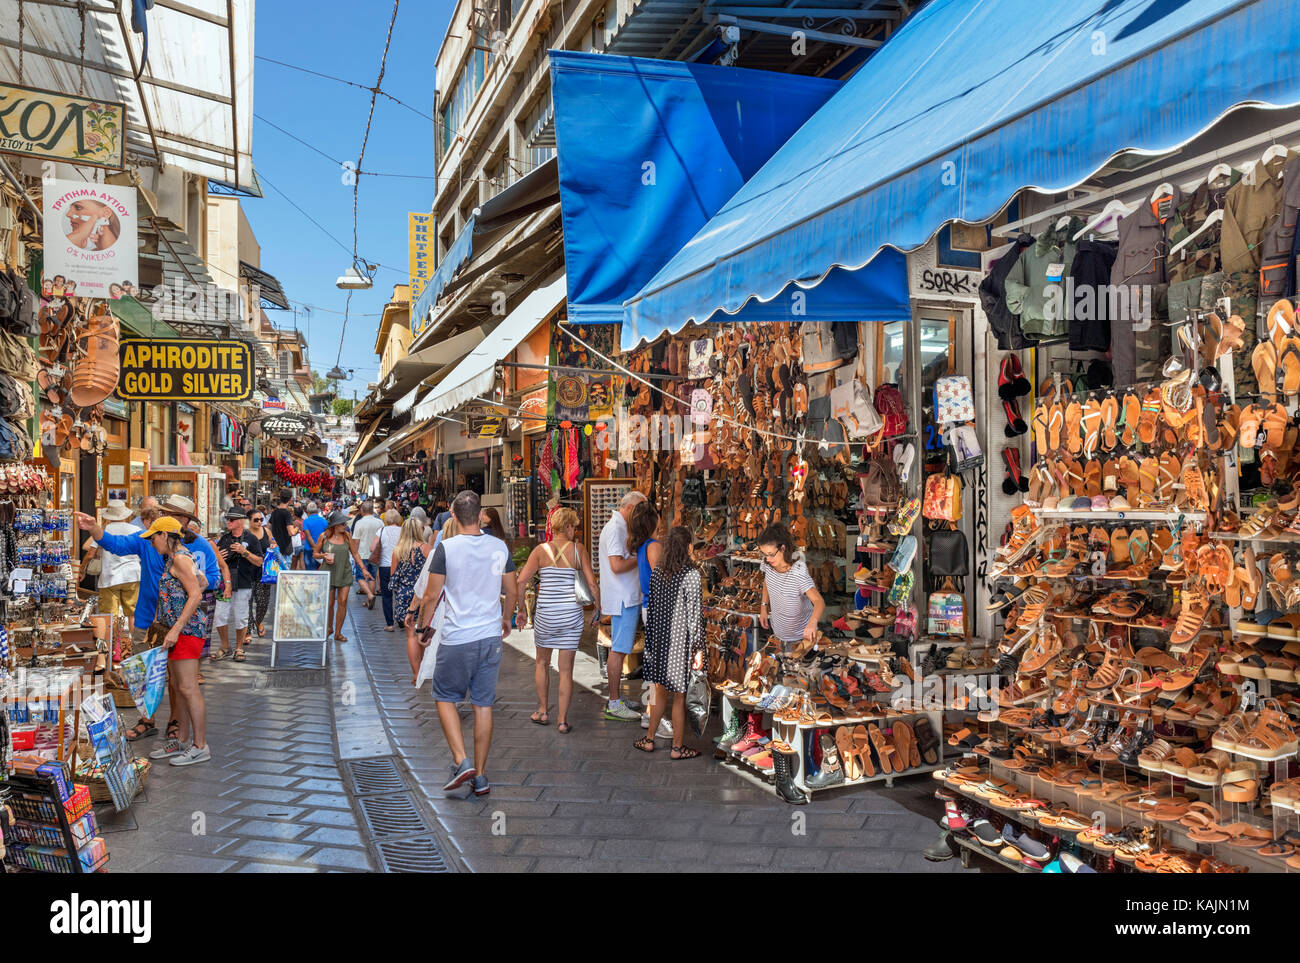 Mercato delle pulci di Monastiraki. Negozi e bancarelle su Ifestou Street, Monastiraki, Atene, Grecia Foto Stock